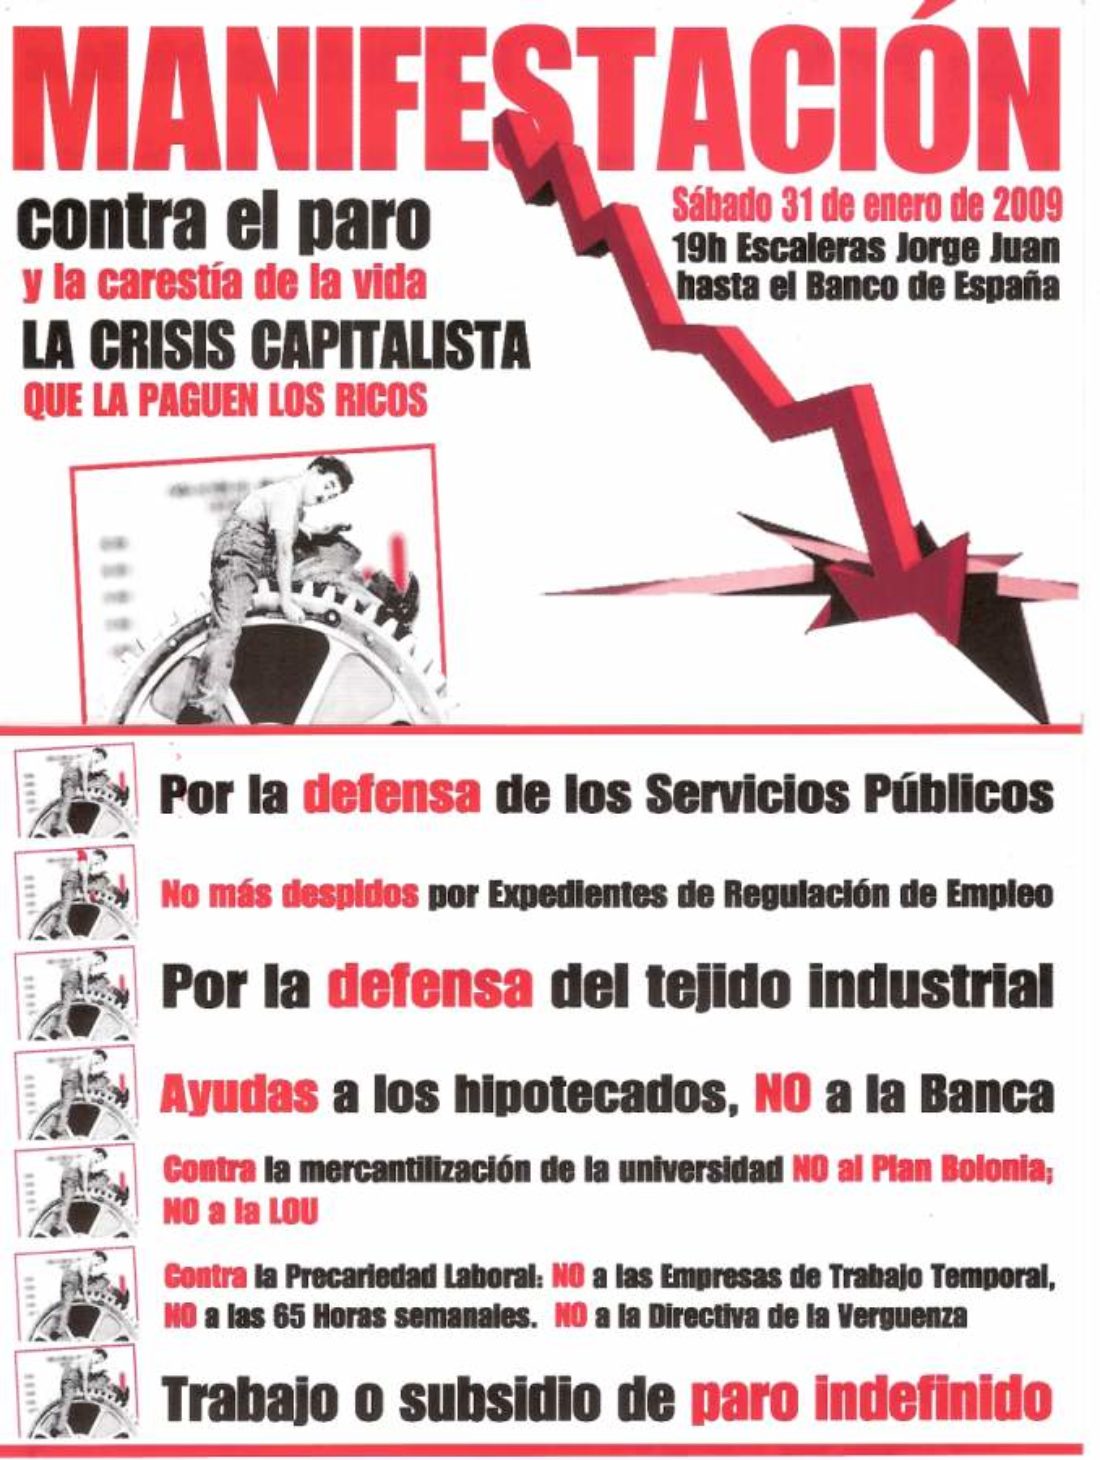 Alacant : Manifestación el sábado 31 de enero contra el paro y la carestía de la vida, a las 19 H., de las escaleras Jorge Juan hasta el Banco de España